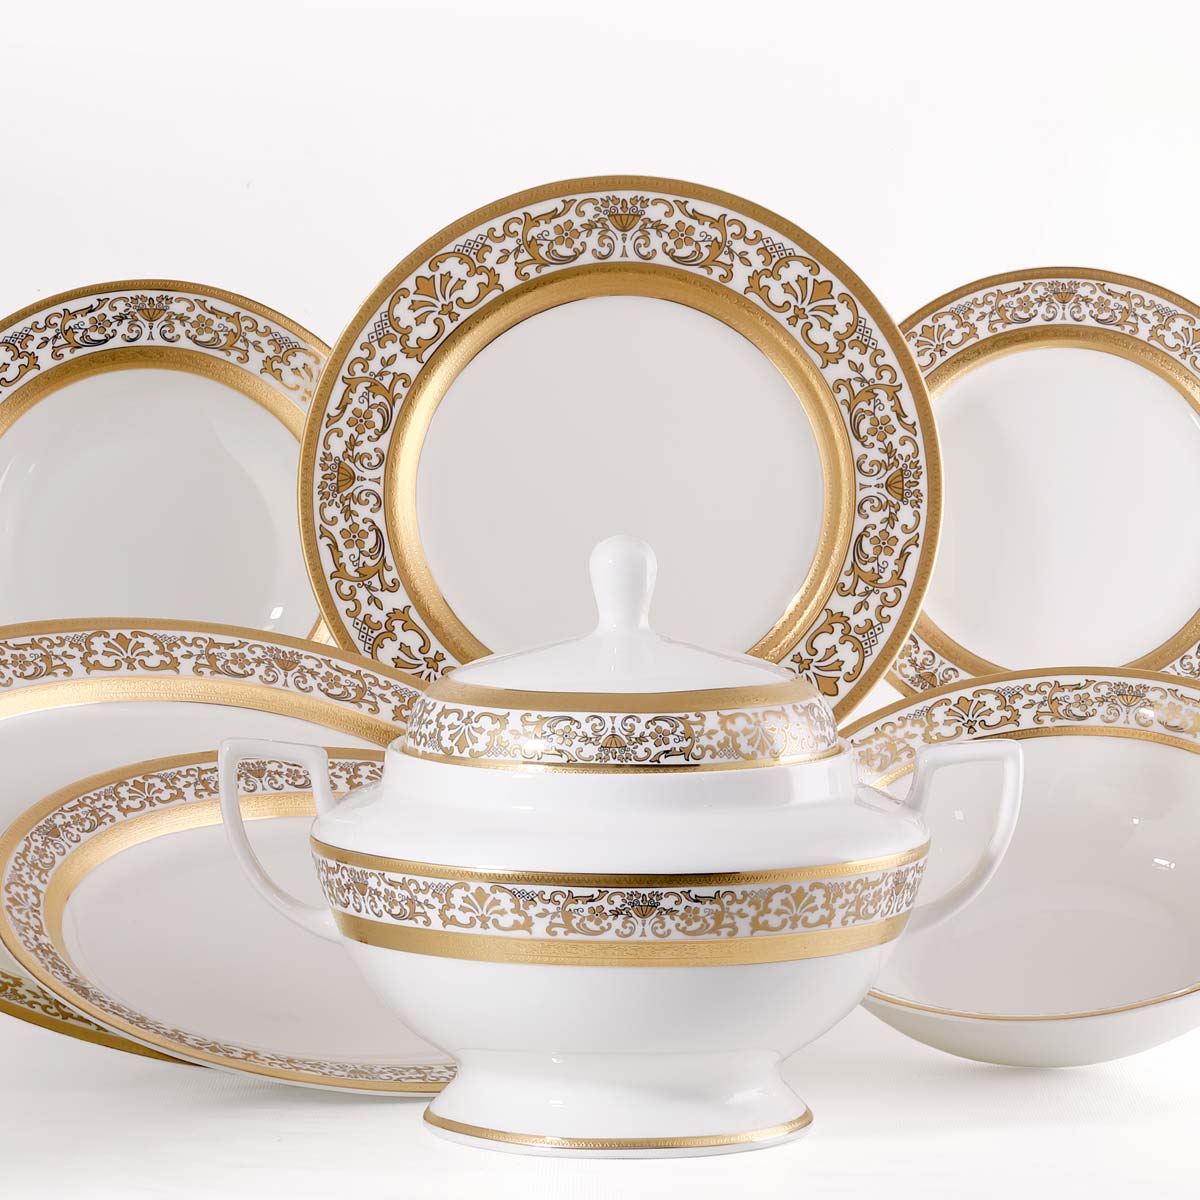 Servizio piatti classico con decorazione prestigiosa in oro inciso su trasparente porcellana - Prestige